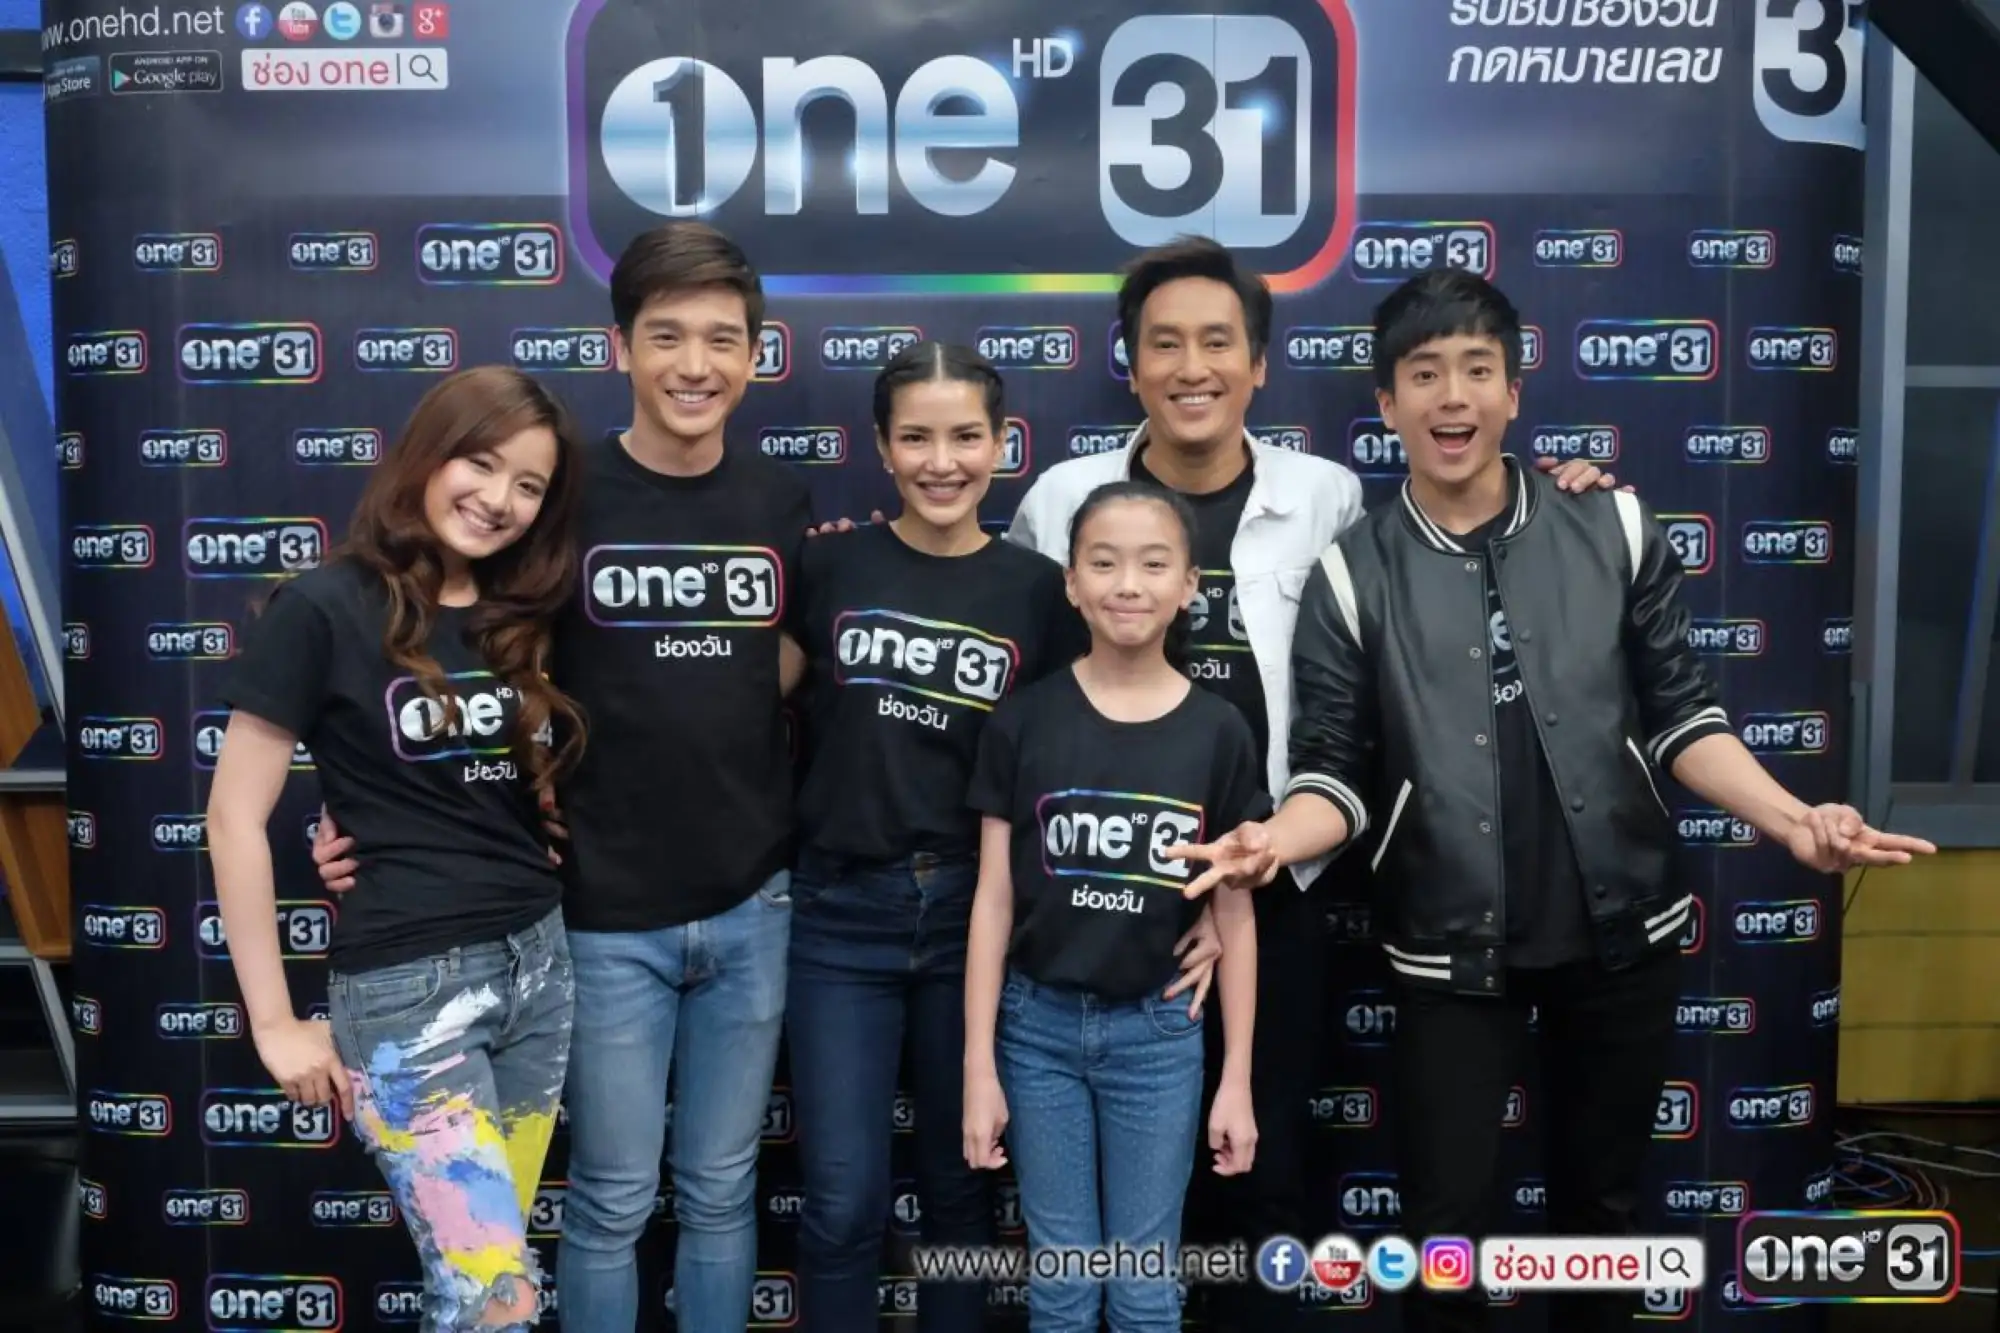 泰国ONE31电视台是泰国GMM公司旗下的电视台（图片来源：脸书）